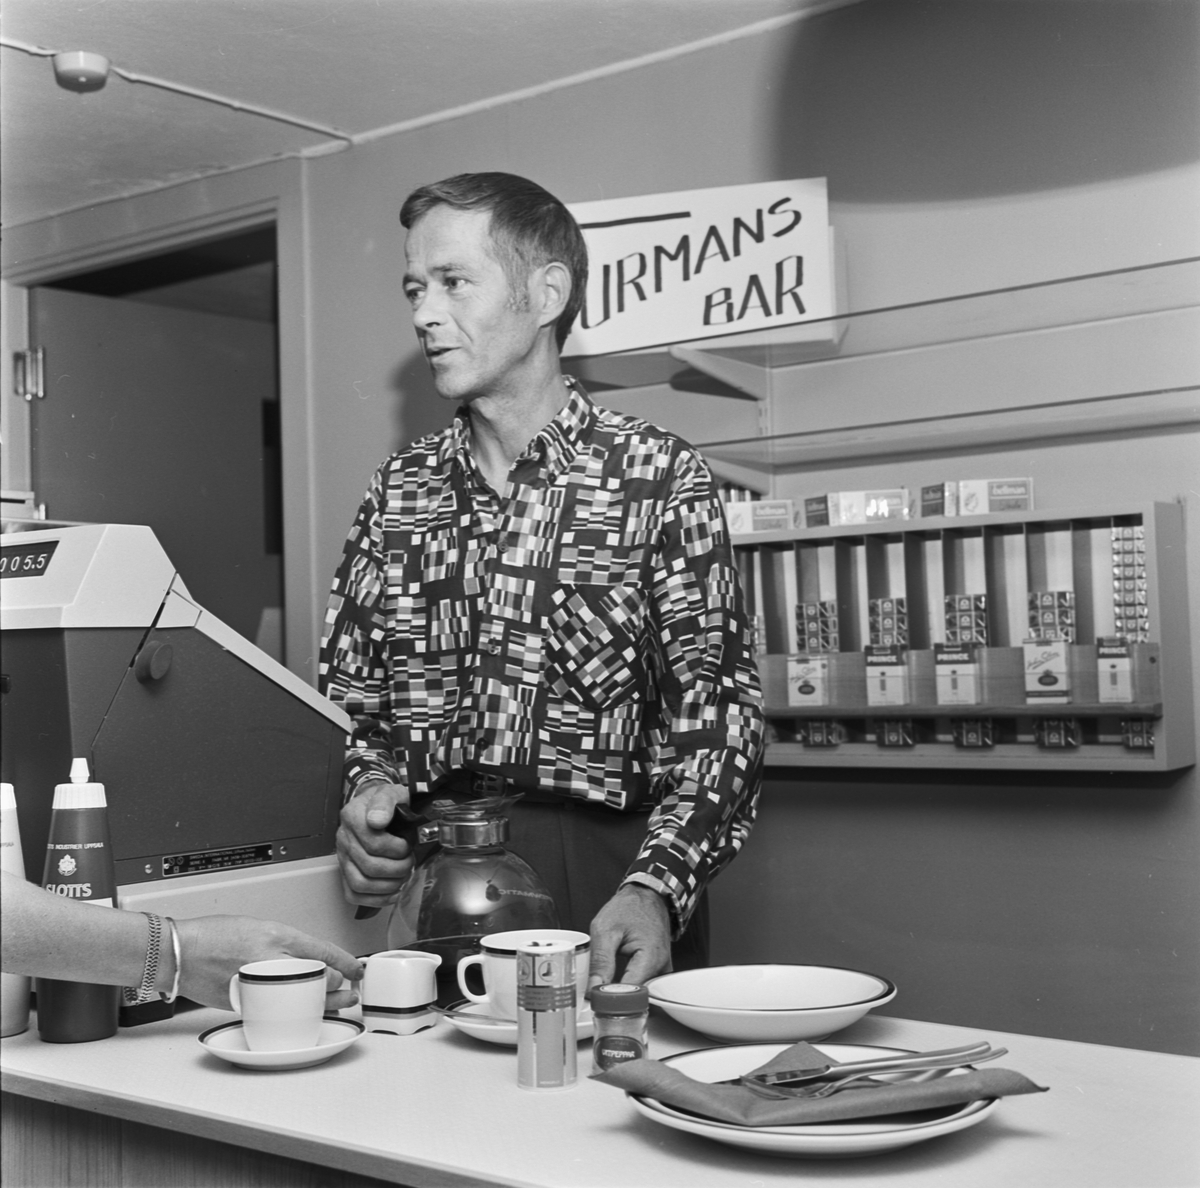 Invigning av Turmans bar, Tierp, Uppland 1969